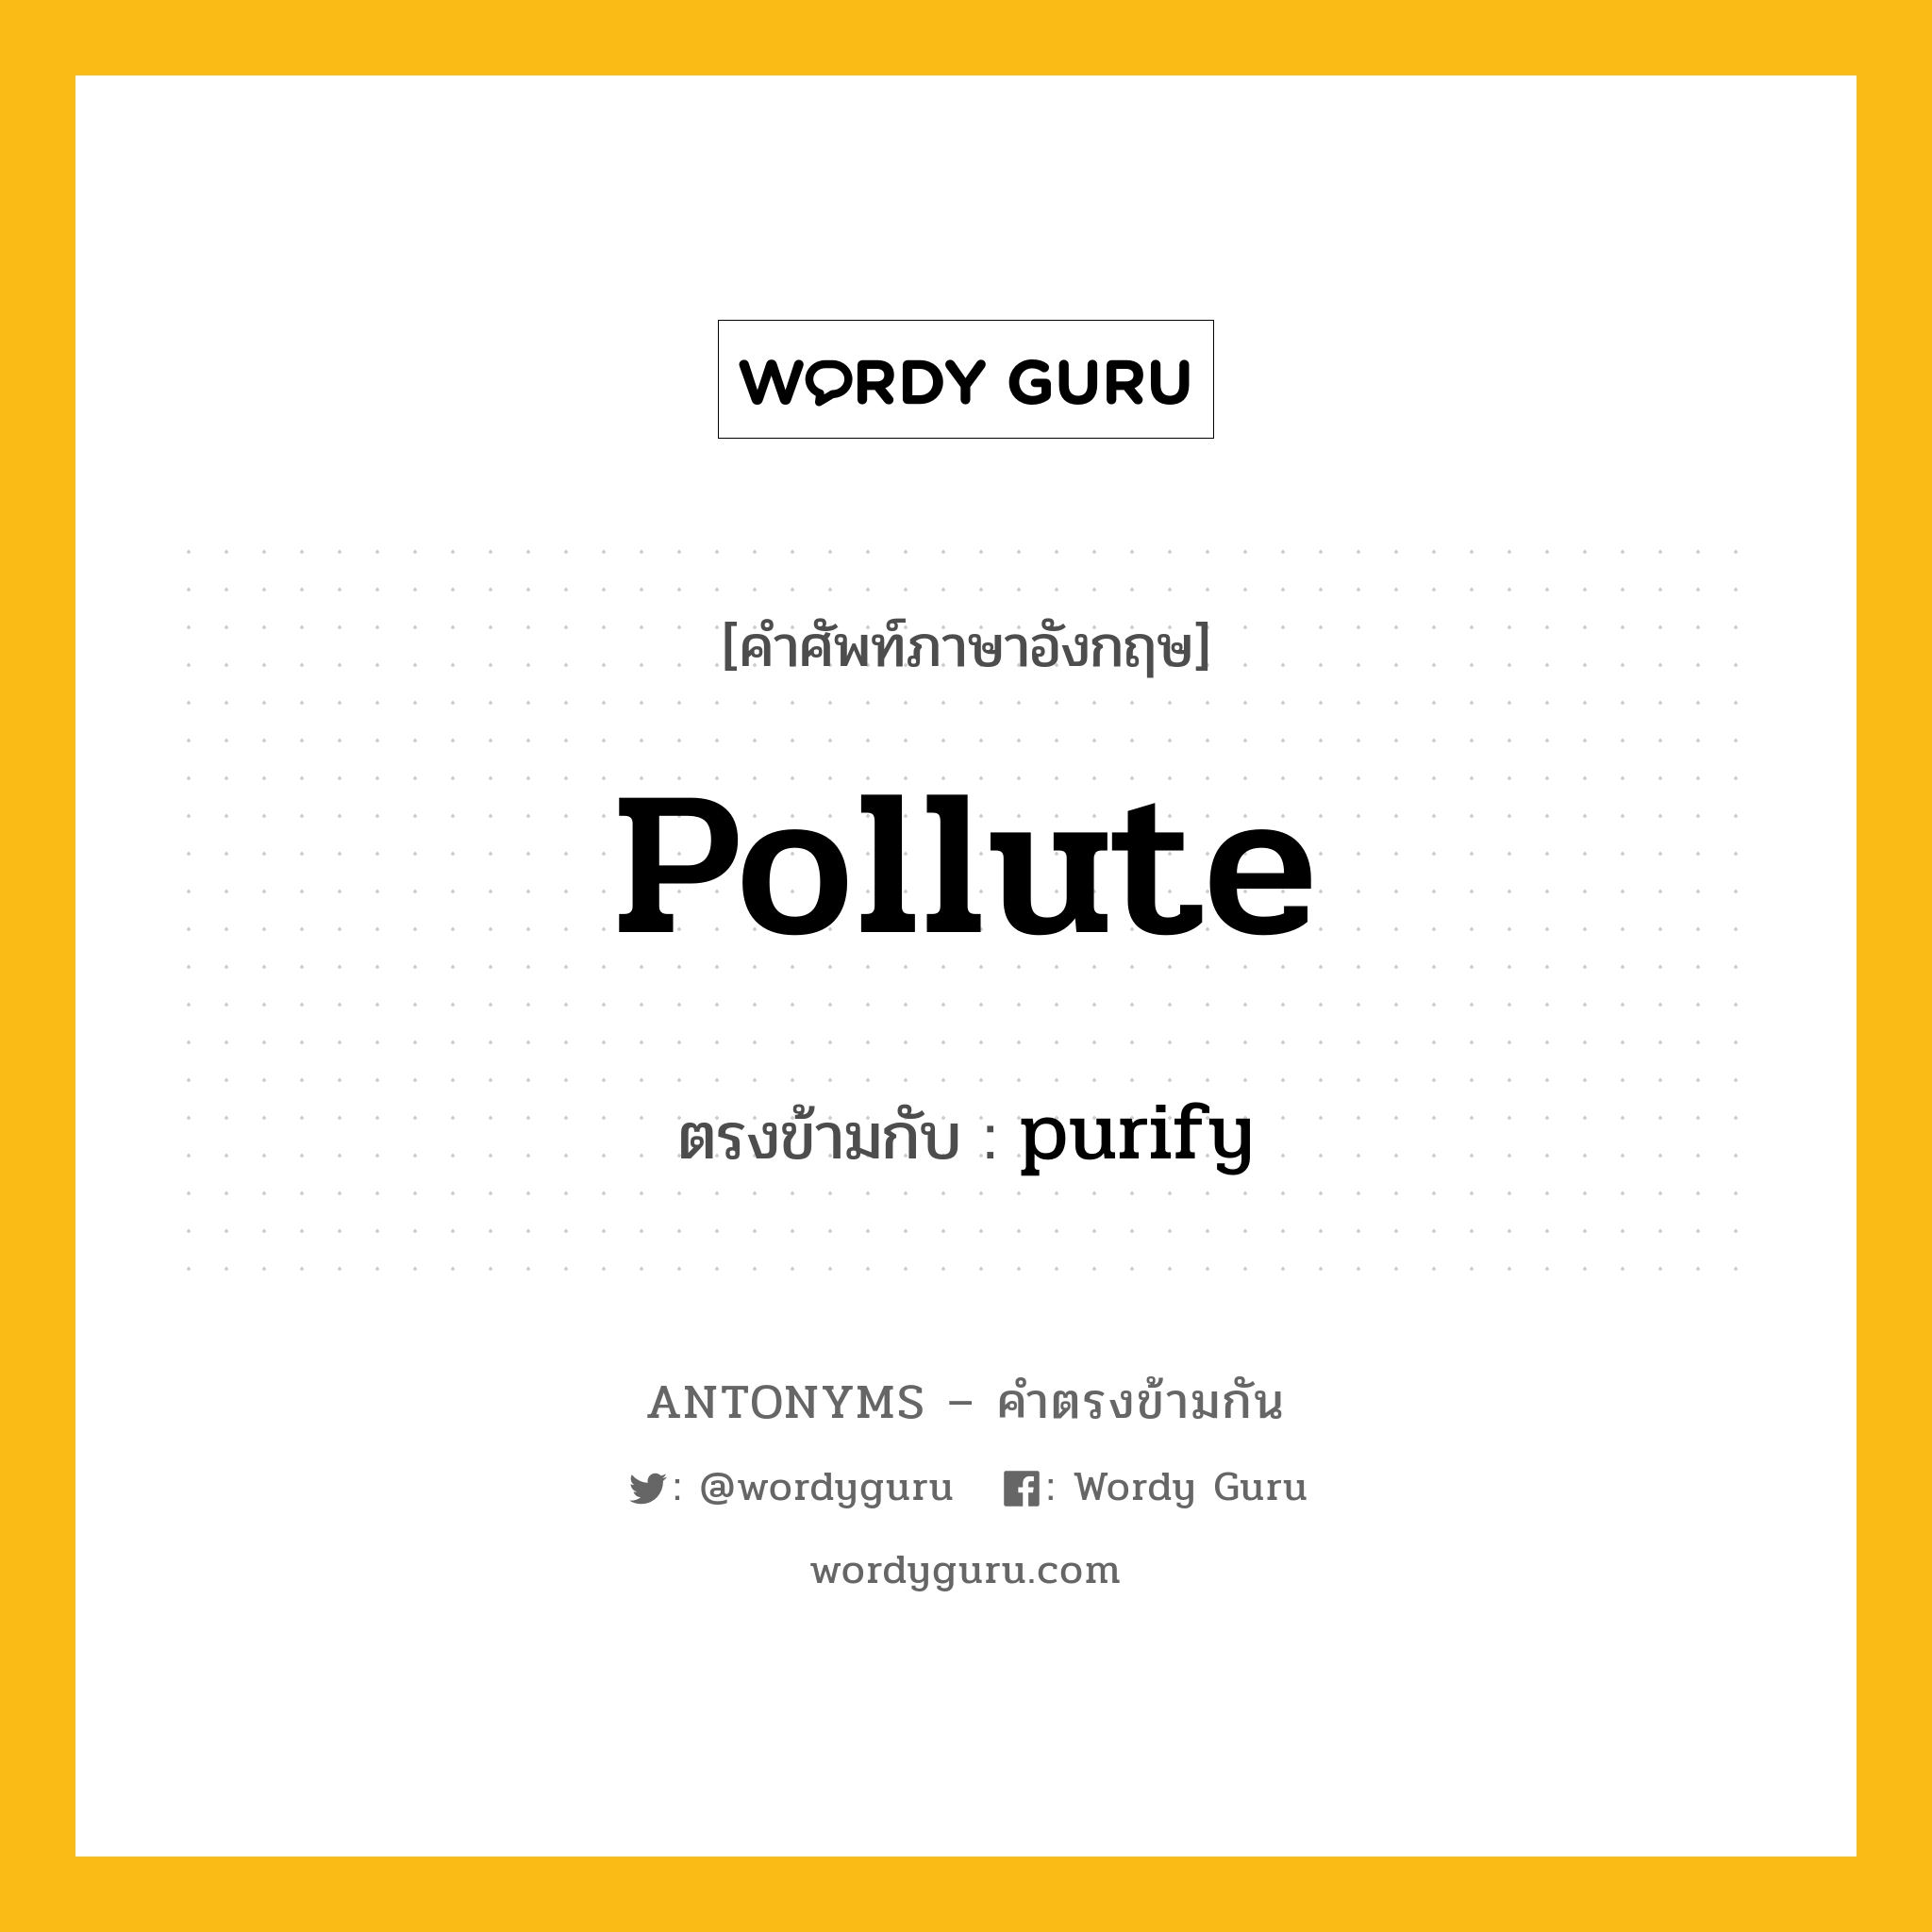 pollute เป็นคำตรงข้ามกับคำไหนบ้าง?, คำศัพท์ภาษาอังกฤษ pollute ตรงข้ามกับ purify หมวด purify